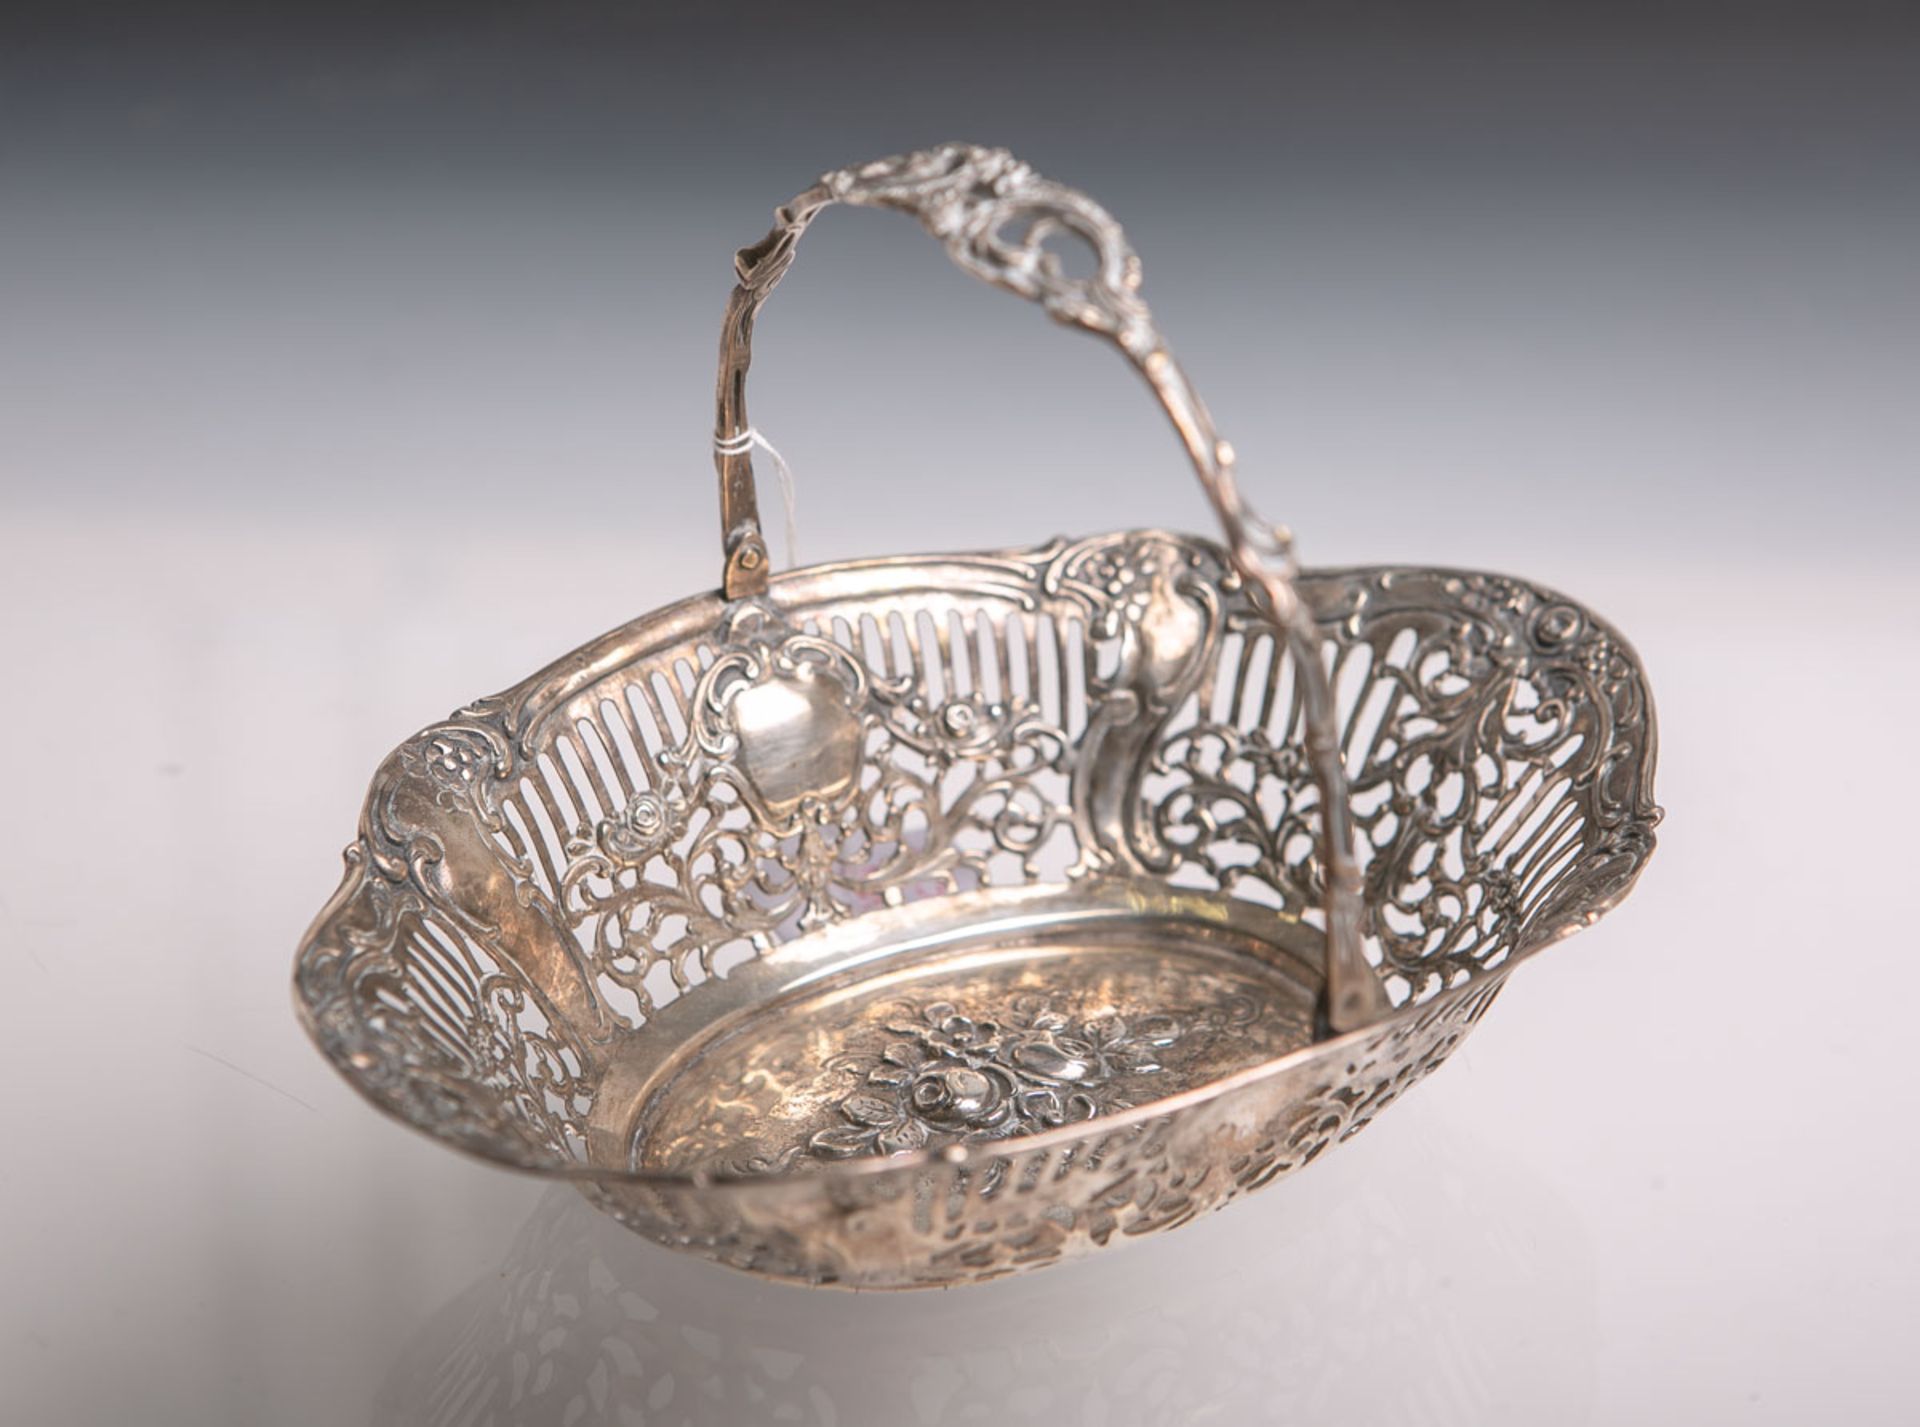 Ovales Henkelkörbchen 800 Silber, filigran durchbrochen gearbeitet, im Spiegel ein Blumen- u.